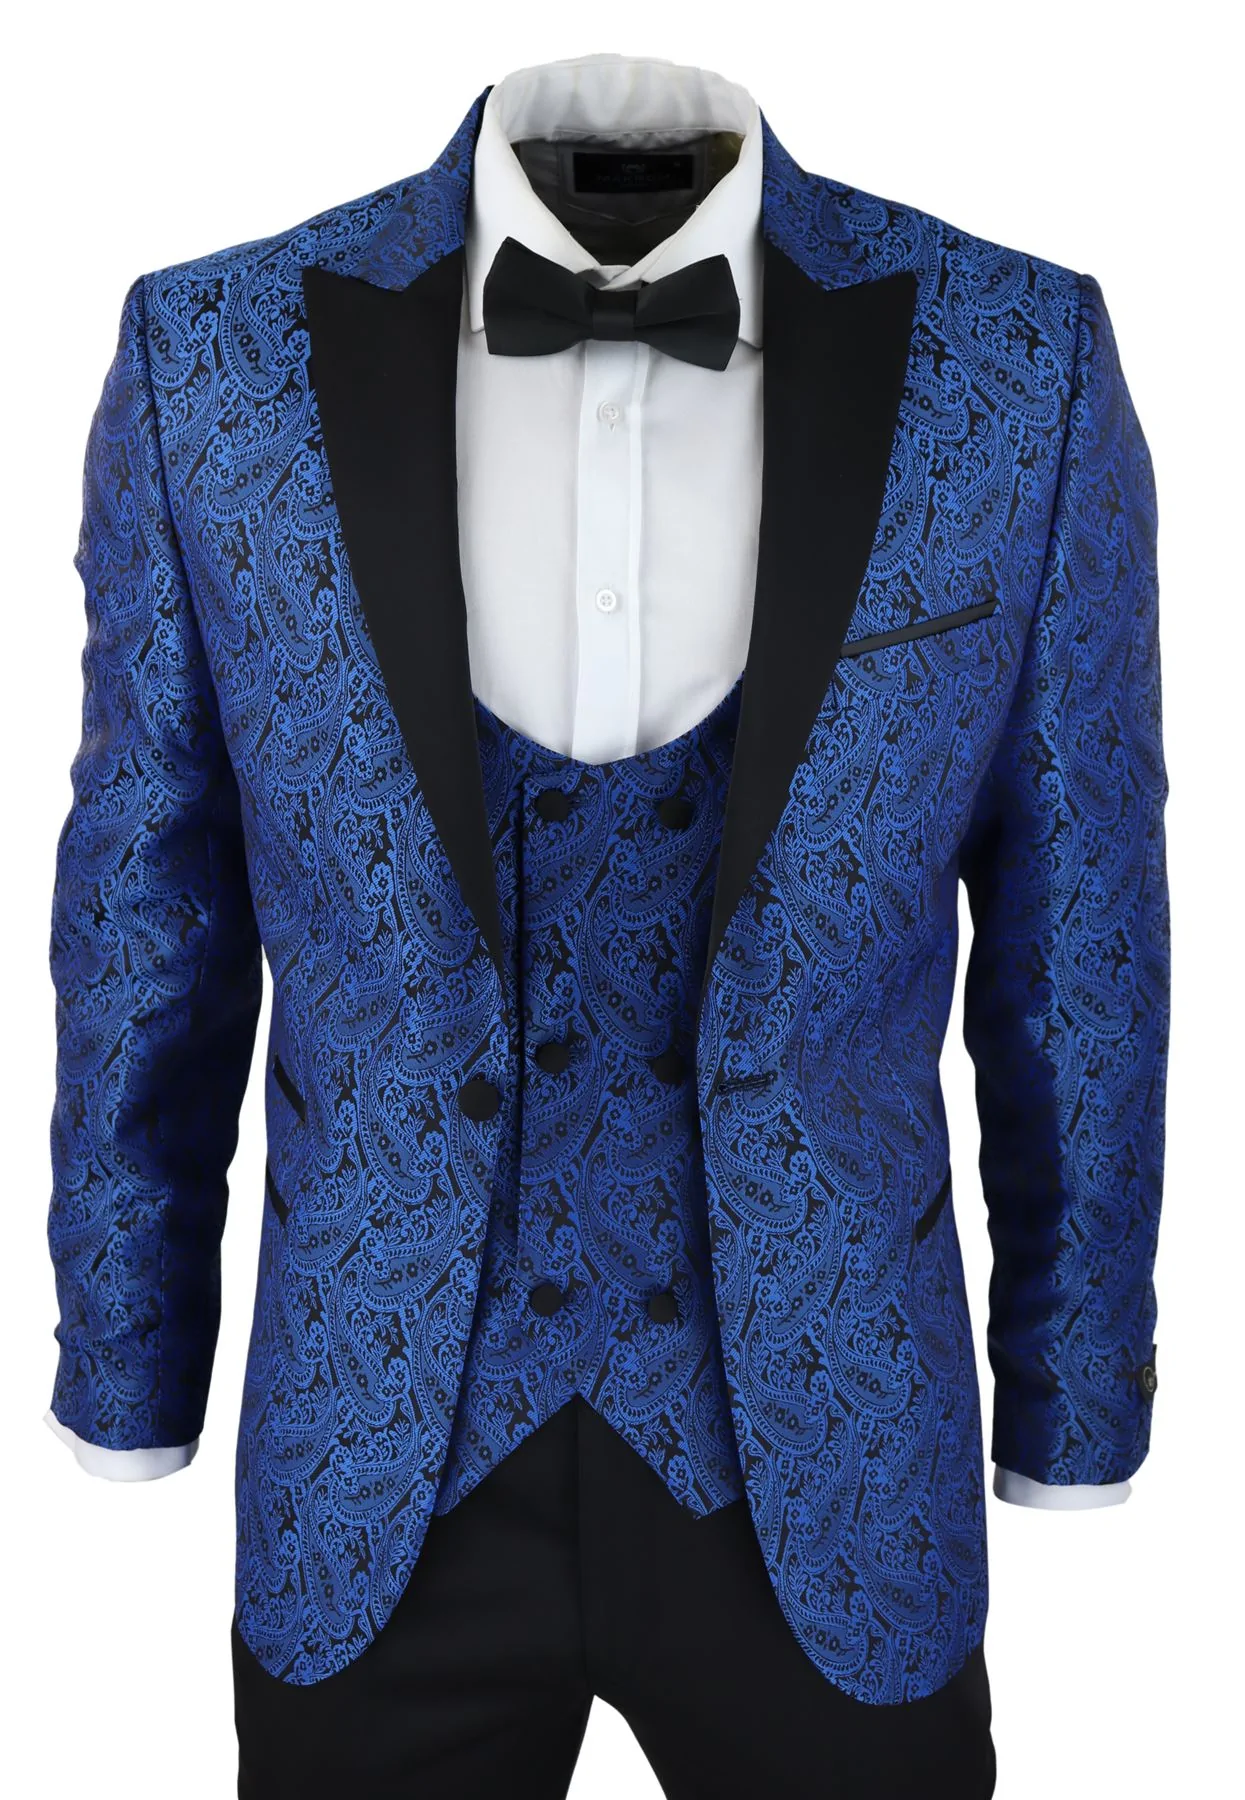 Buy Men Suit Wedding Suit 3 Piece Suit Wine Suit Prom Suit Party Wear Suit  Slim Fit Dinner Suit Online in India - Etsy